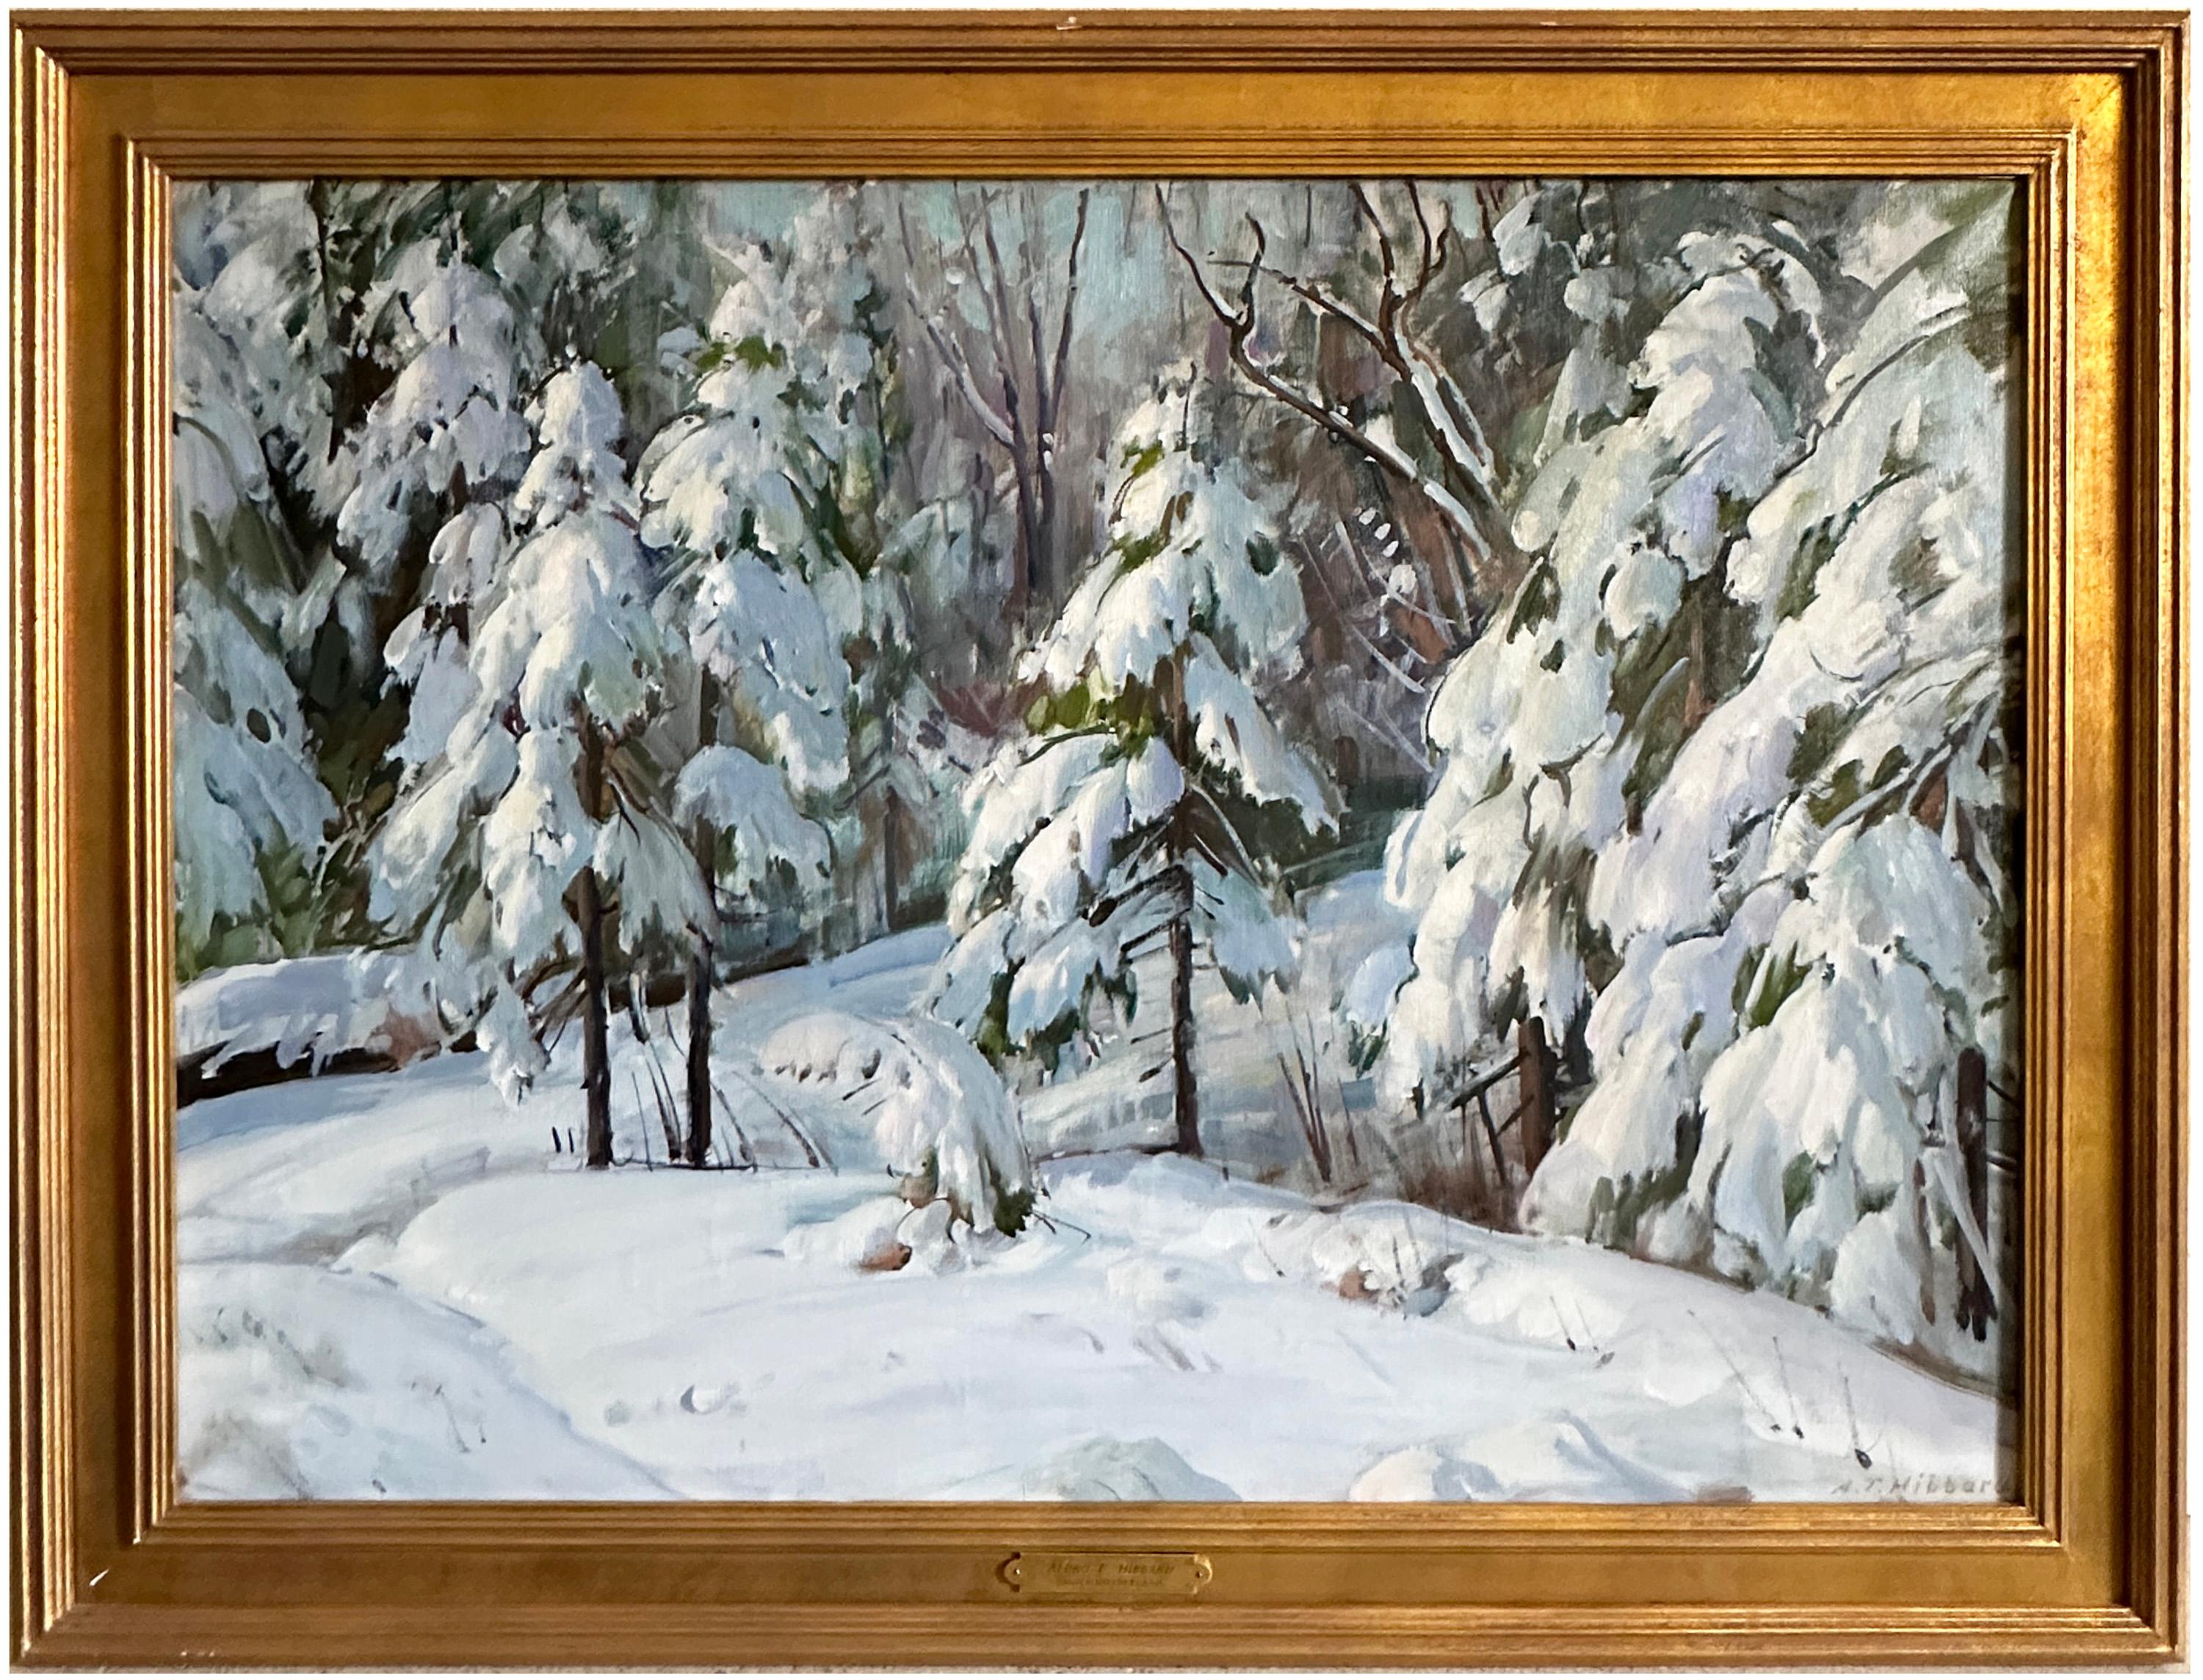 A. Winter Wonderland – Painting von Aldro Thompson Hibbard